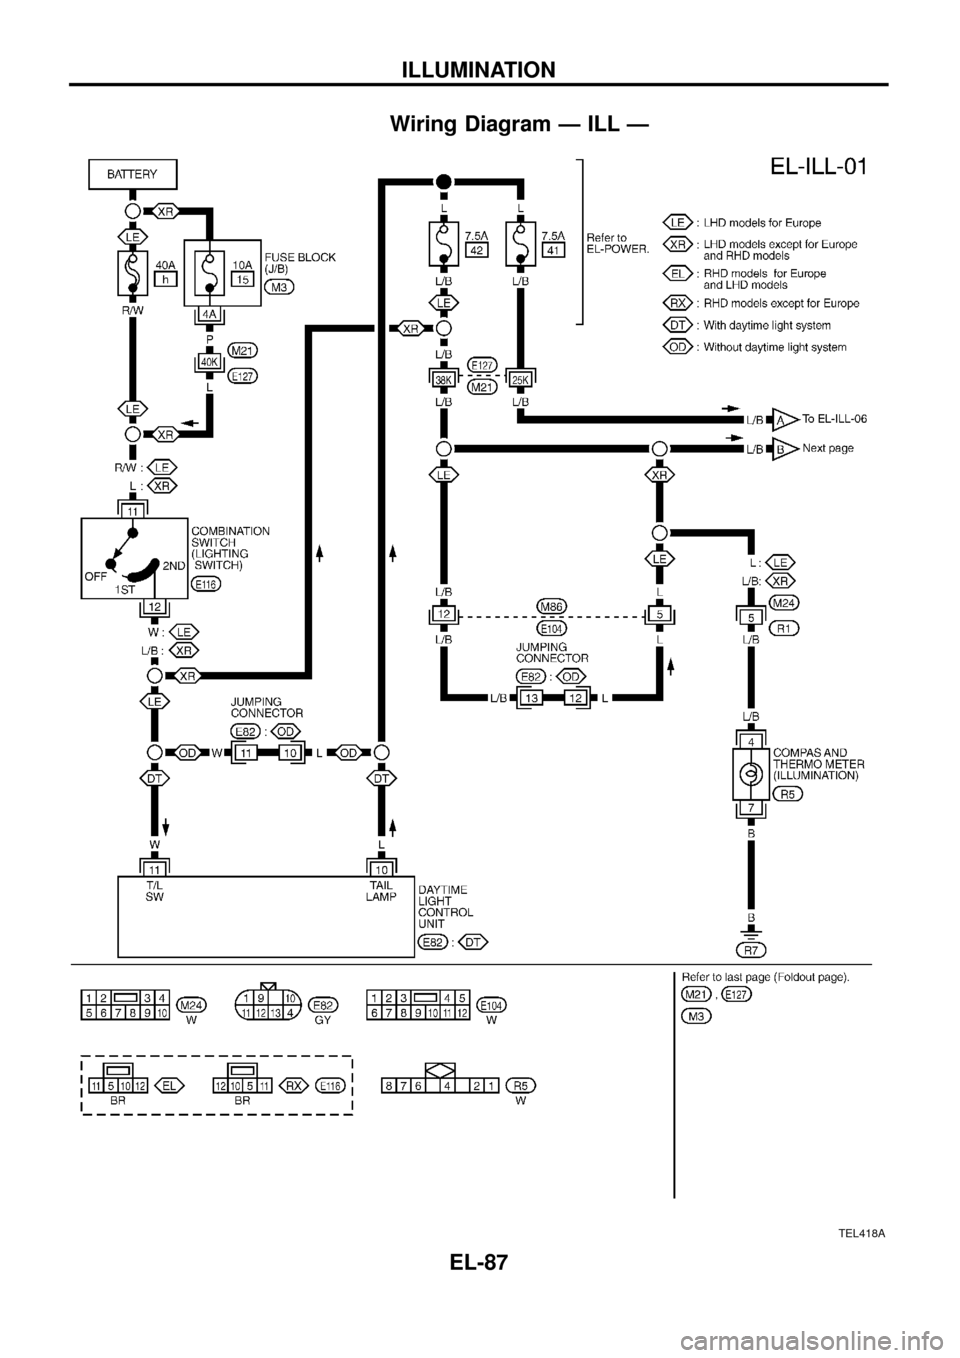 NISSAN PATROL 1998 Y61 / 5.G Electrical System Owners Guide Wiring Diagram Ð ILL Ð
TEL418A
ILLUMINATION
EL-87 